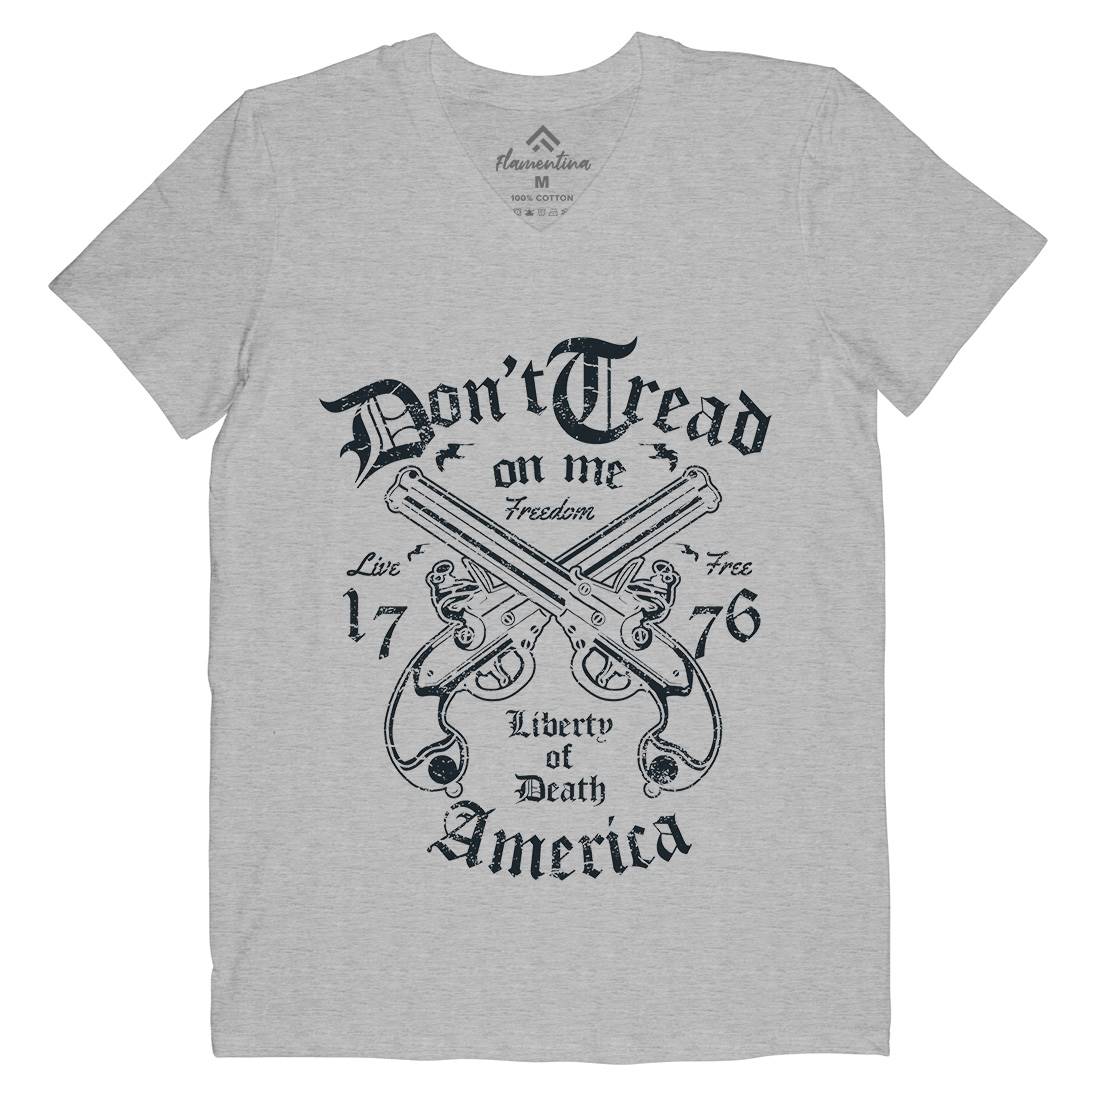 Liberty Of Death Mens V-Neck T-Shirt American A084